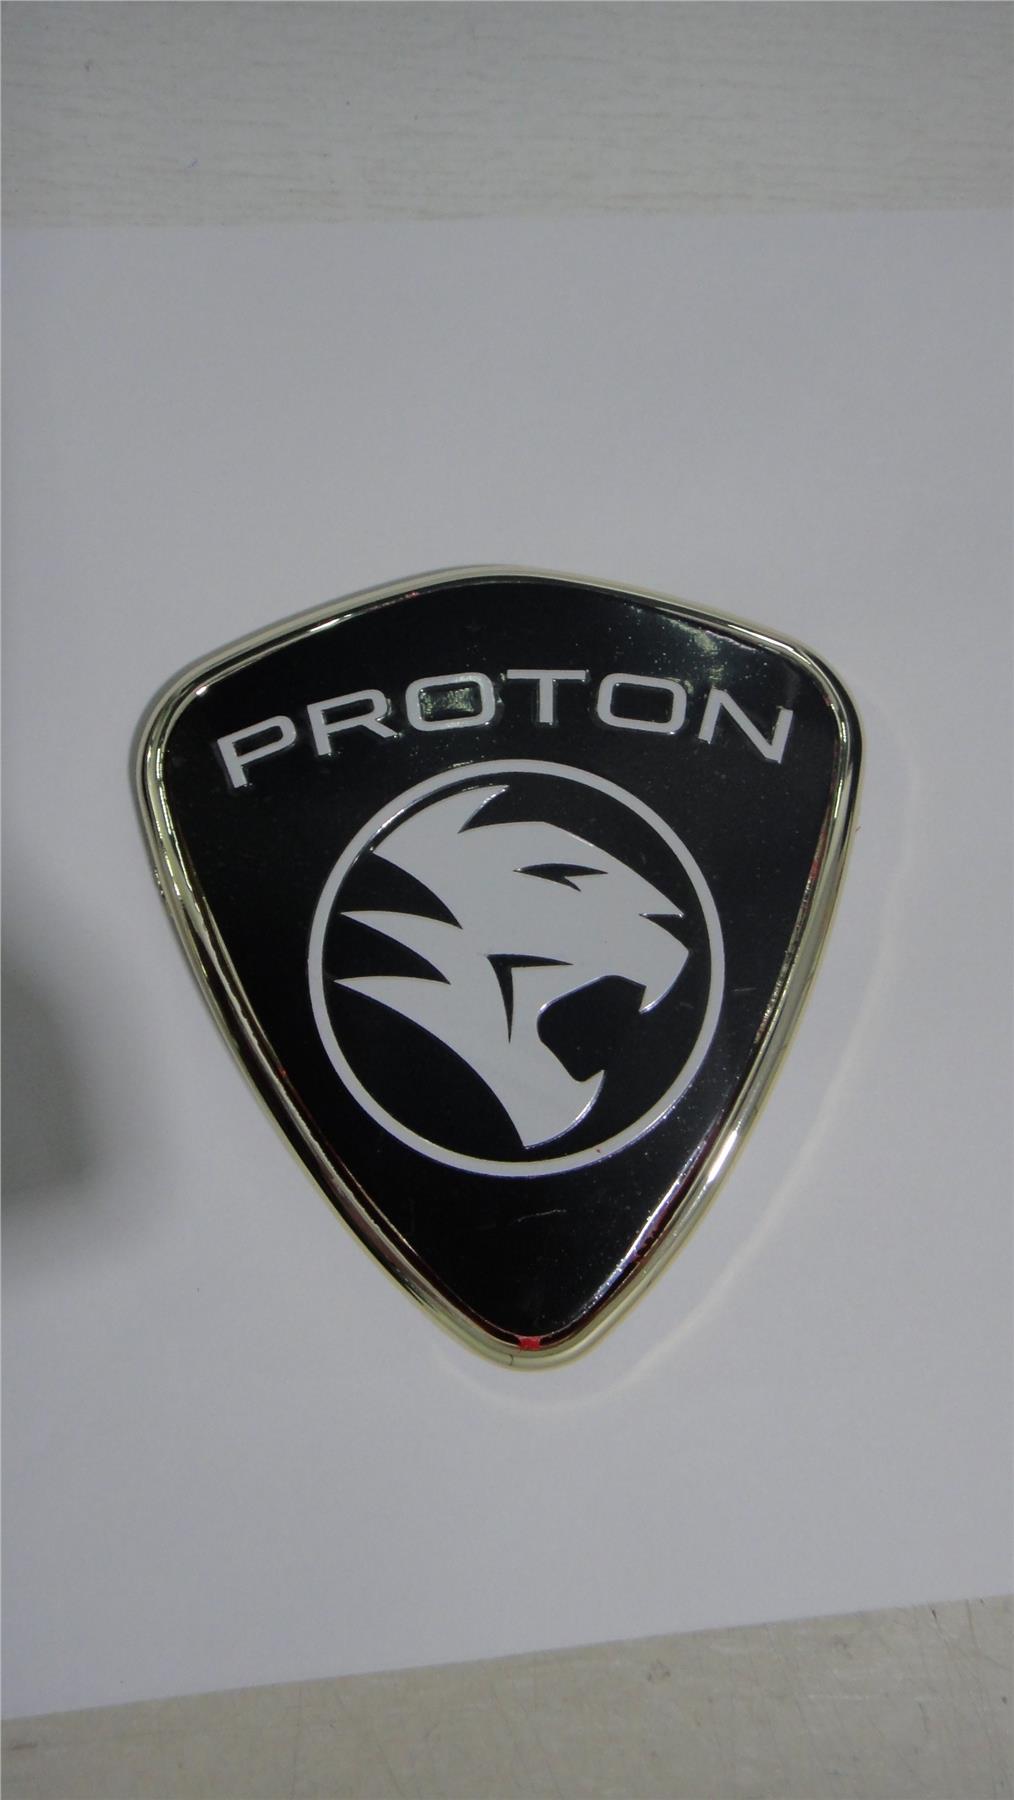 3D Rear Emblem for Proton Waja/Saga BLM/Satria/Persona - Gold